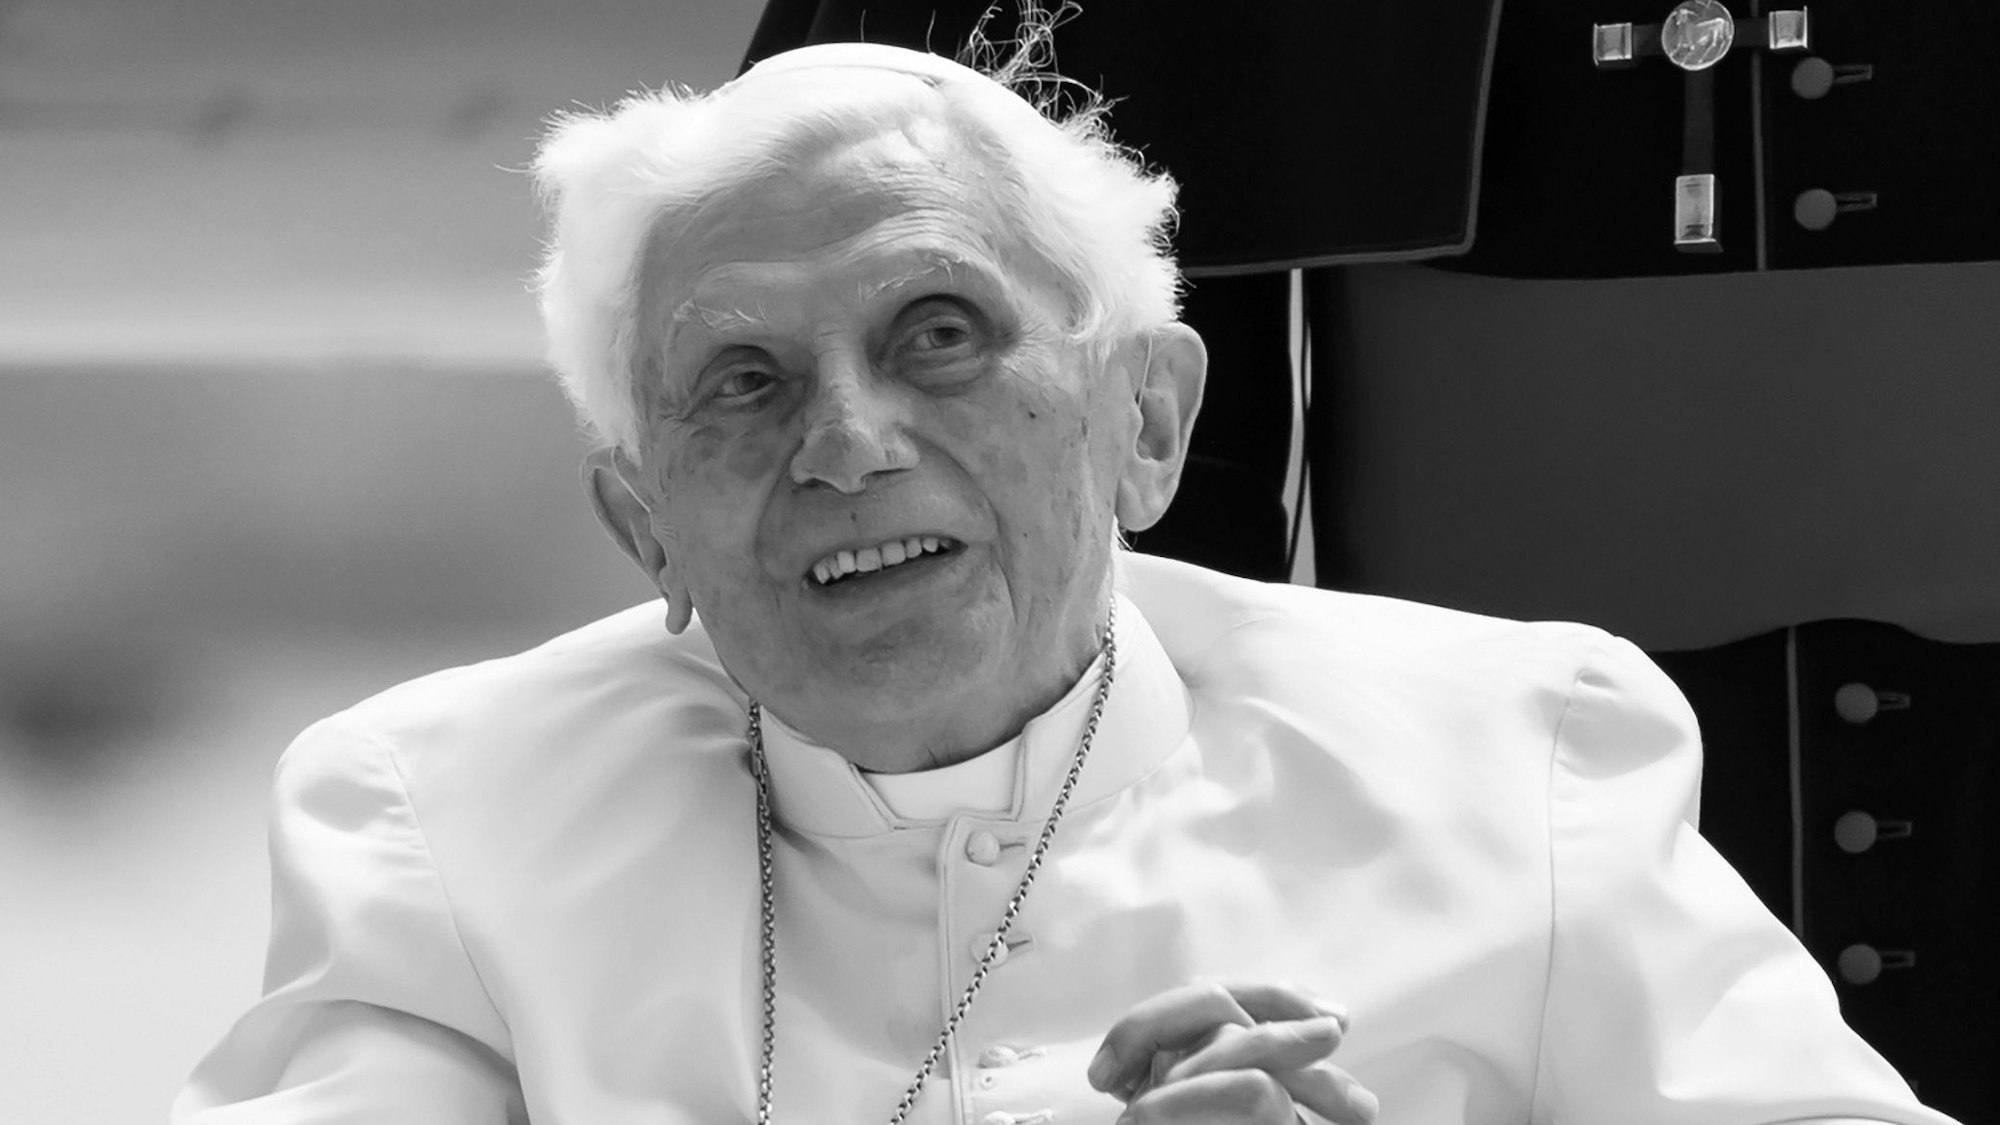 Der emeritierte Papst Benedikt XVI. sitzt auf einem Stuhl. (Archivbild)